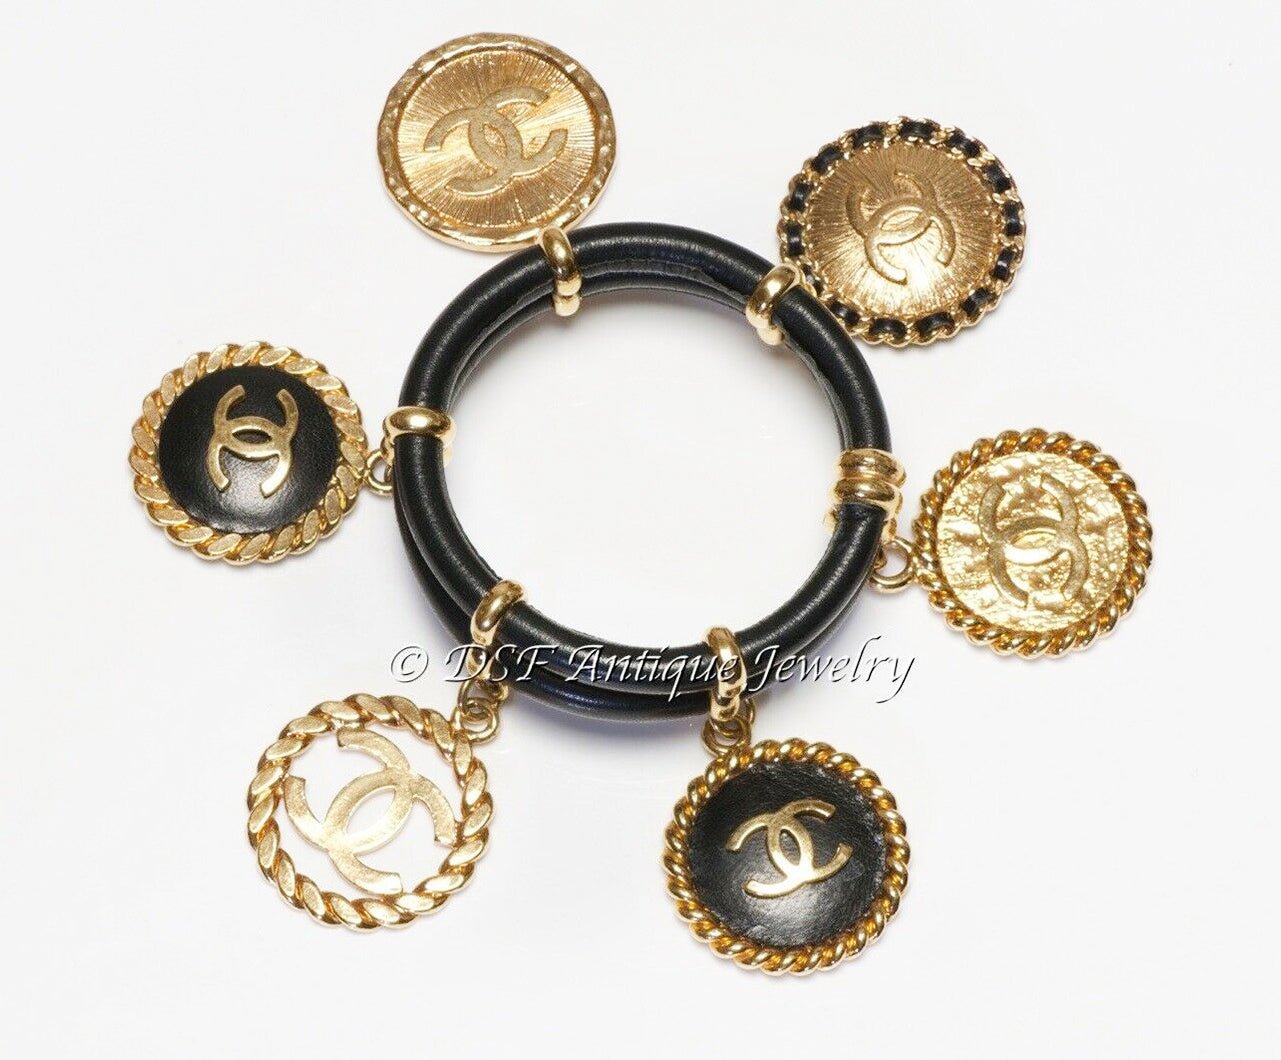 CHANEL Paris 1990’s Black Leather CC 6 Charm Bangle Bracelet - DSF Antique Jewelry